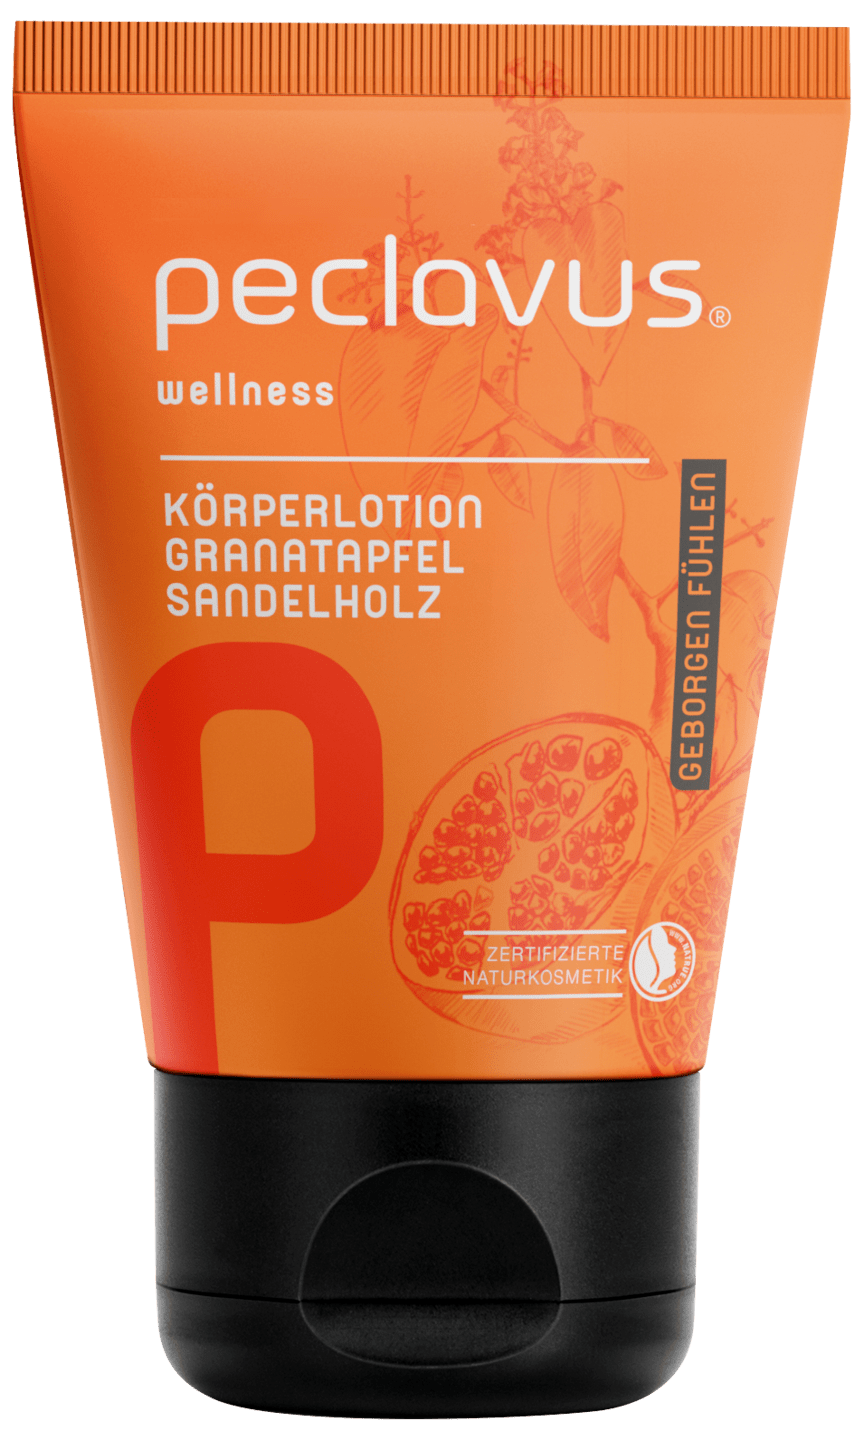 peclavus - Körperlotion Granatapfel Sandelholz, 30 ml